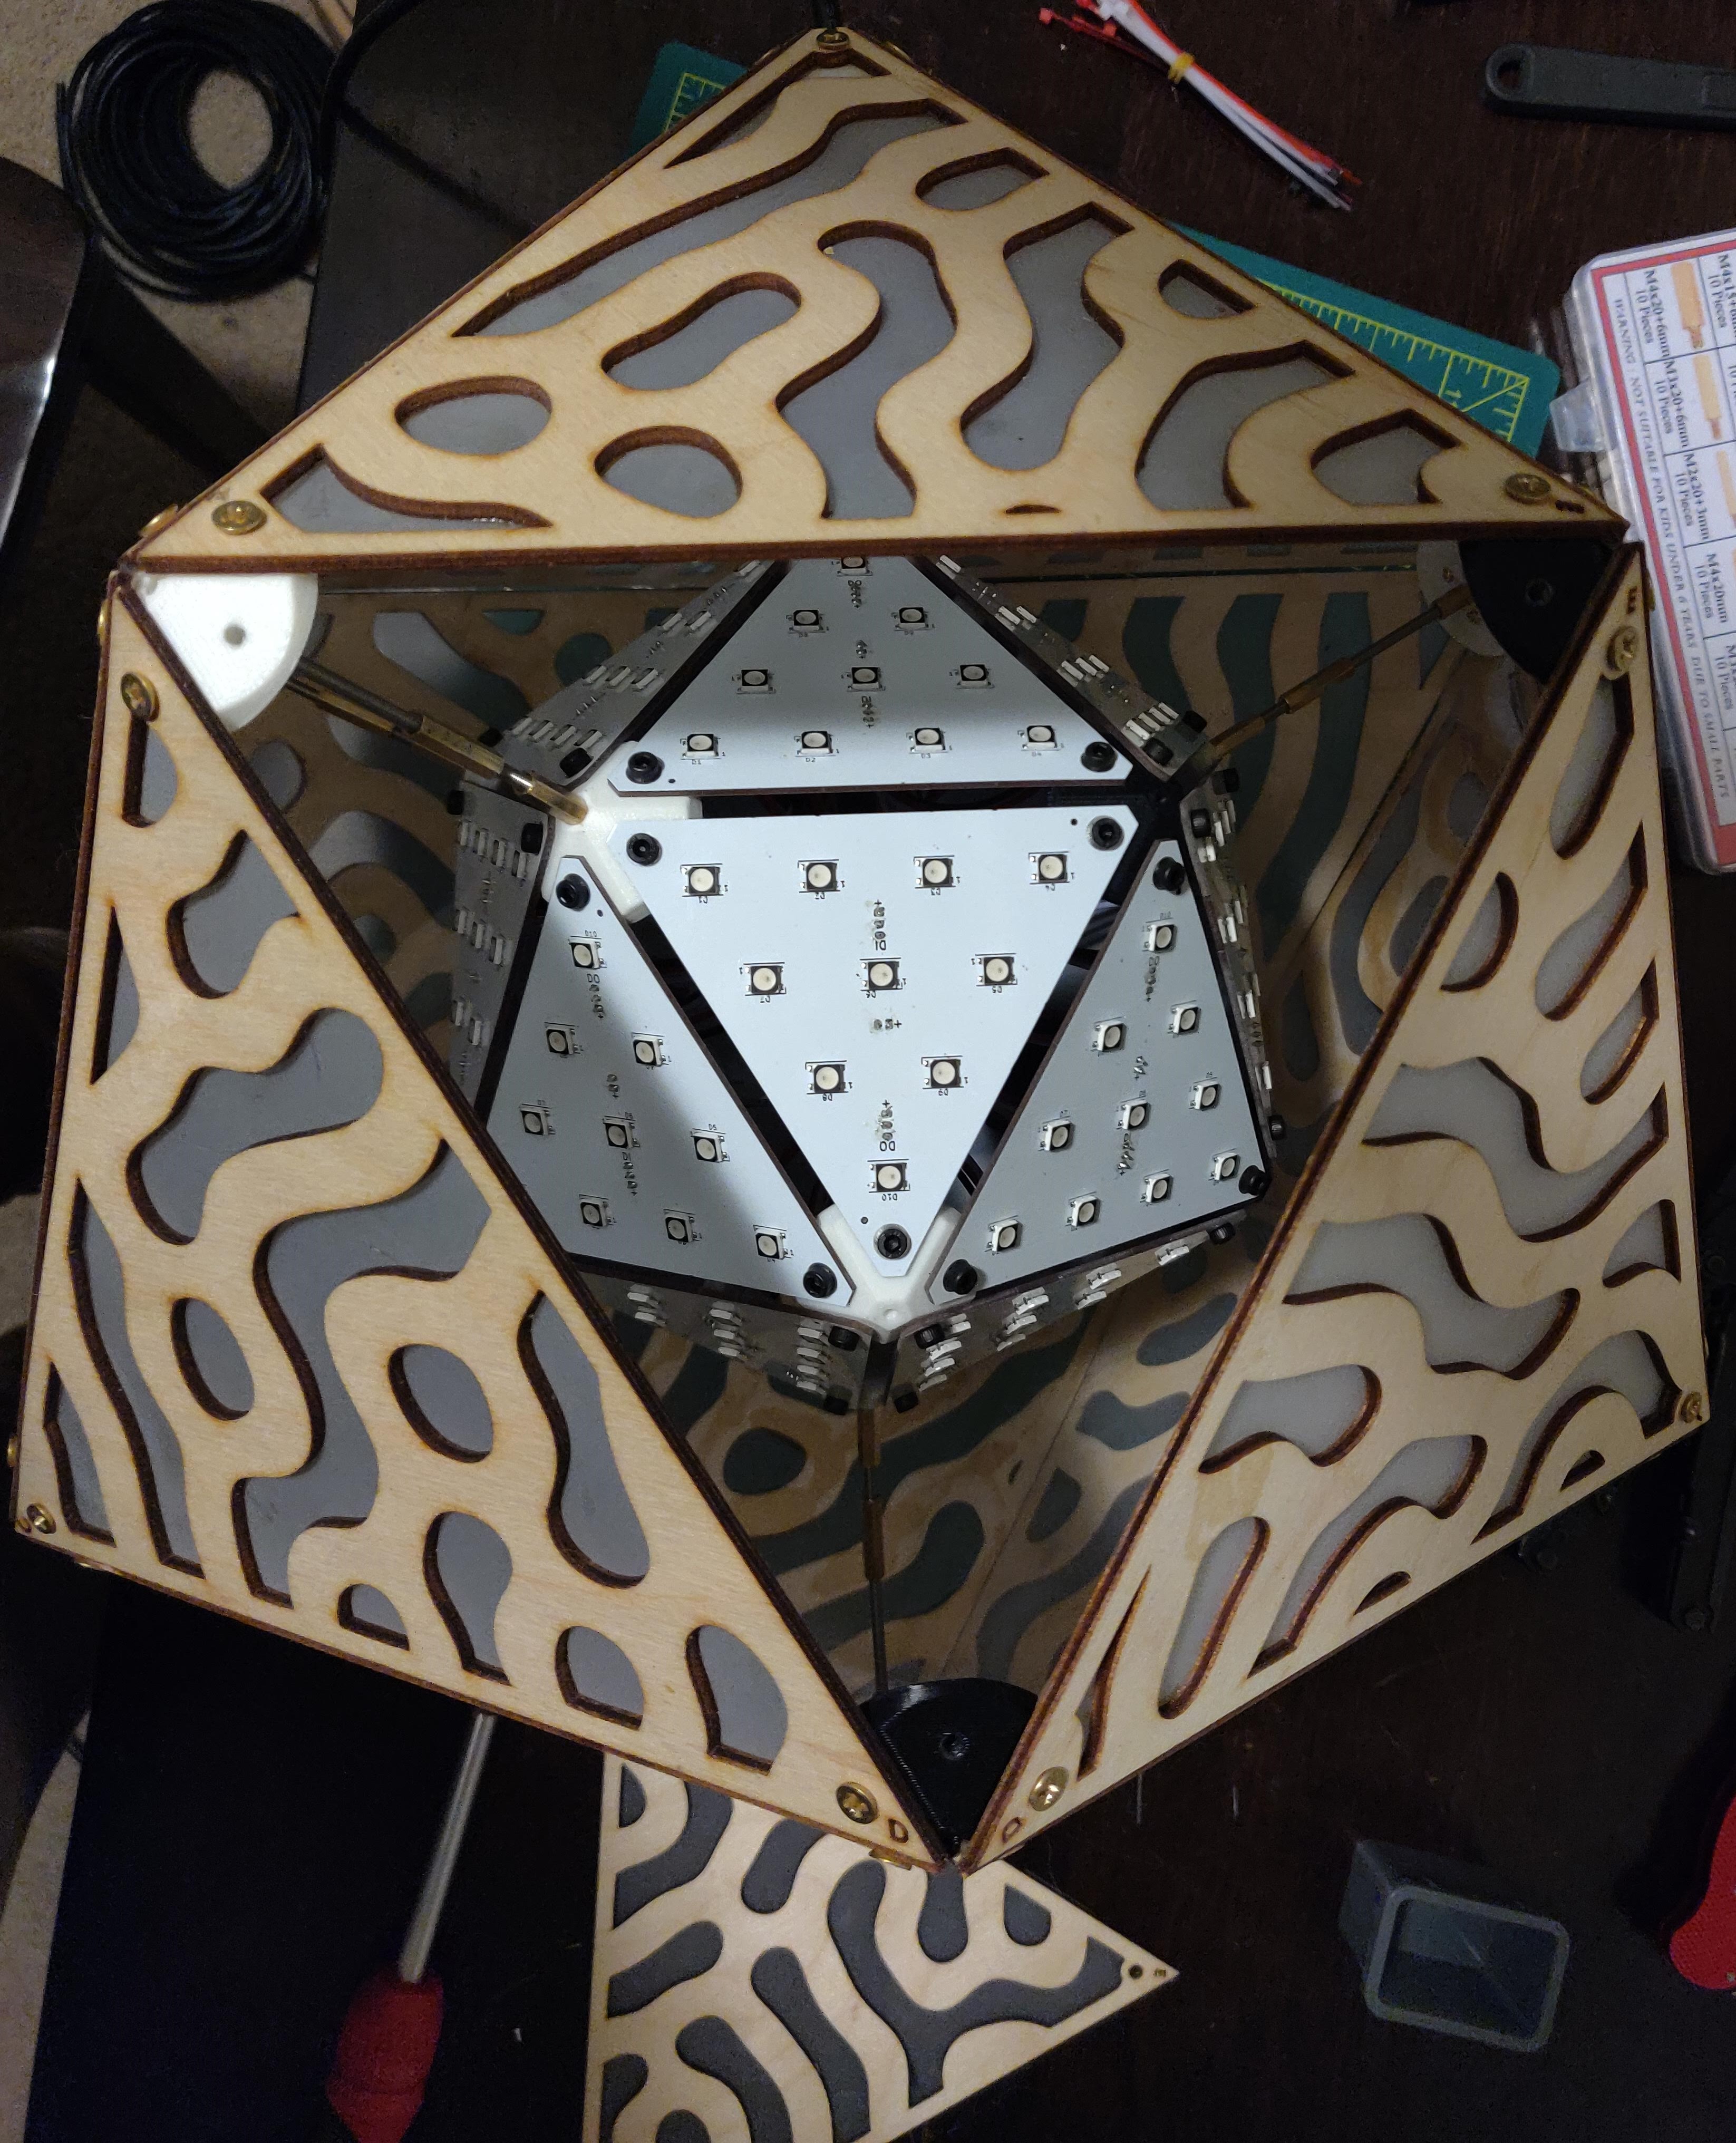 Icosahedral lantern - internal view